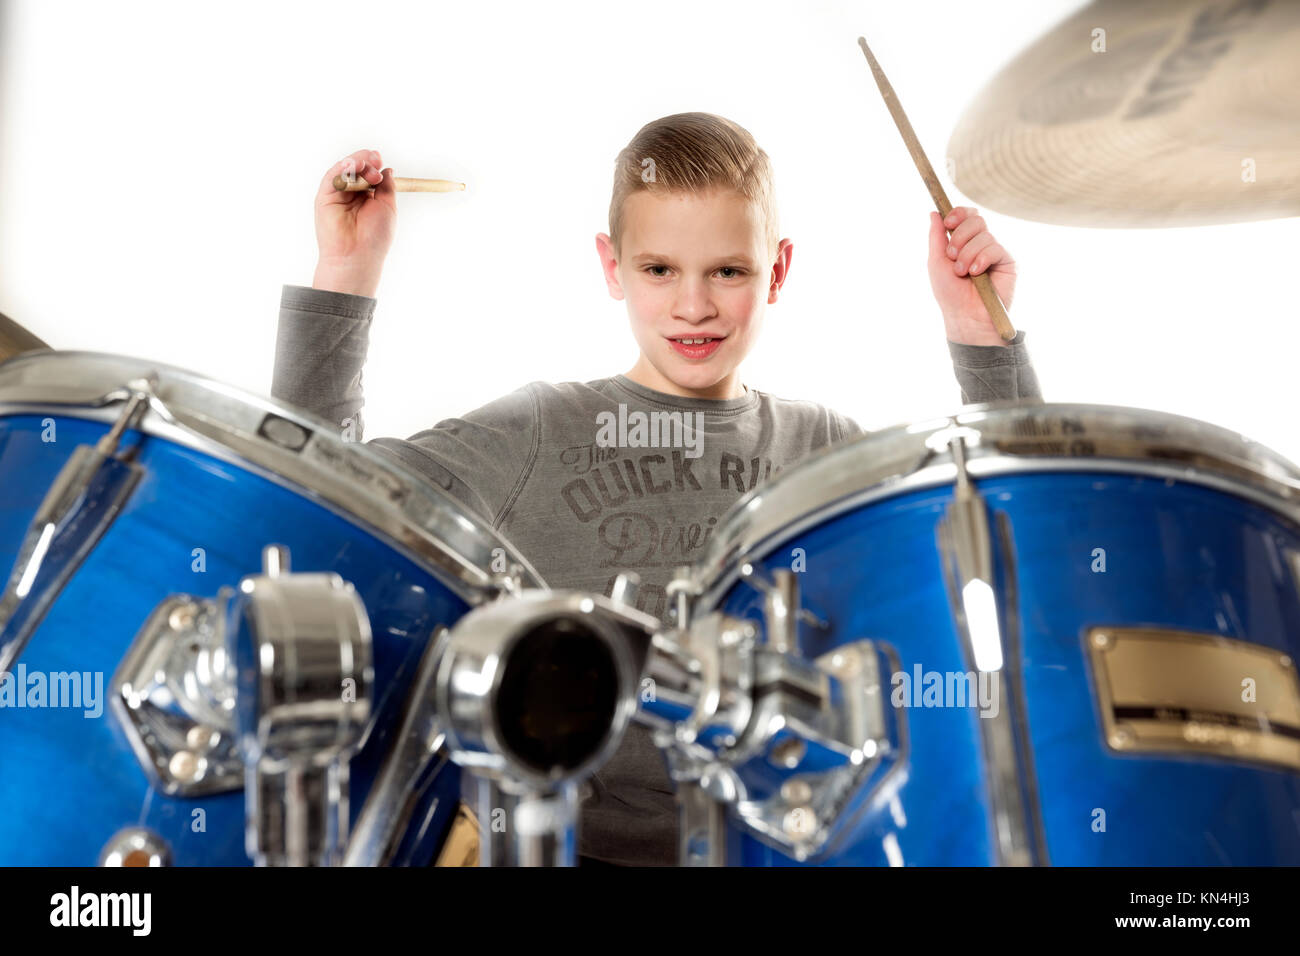 Yount jovencito rubio en drum kit en estudio con fondo blanco. Foto de stock